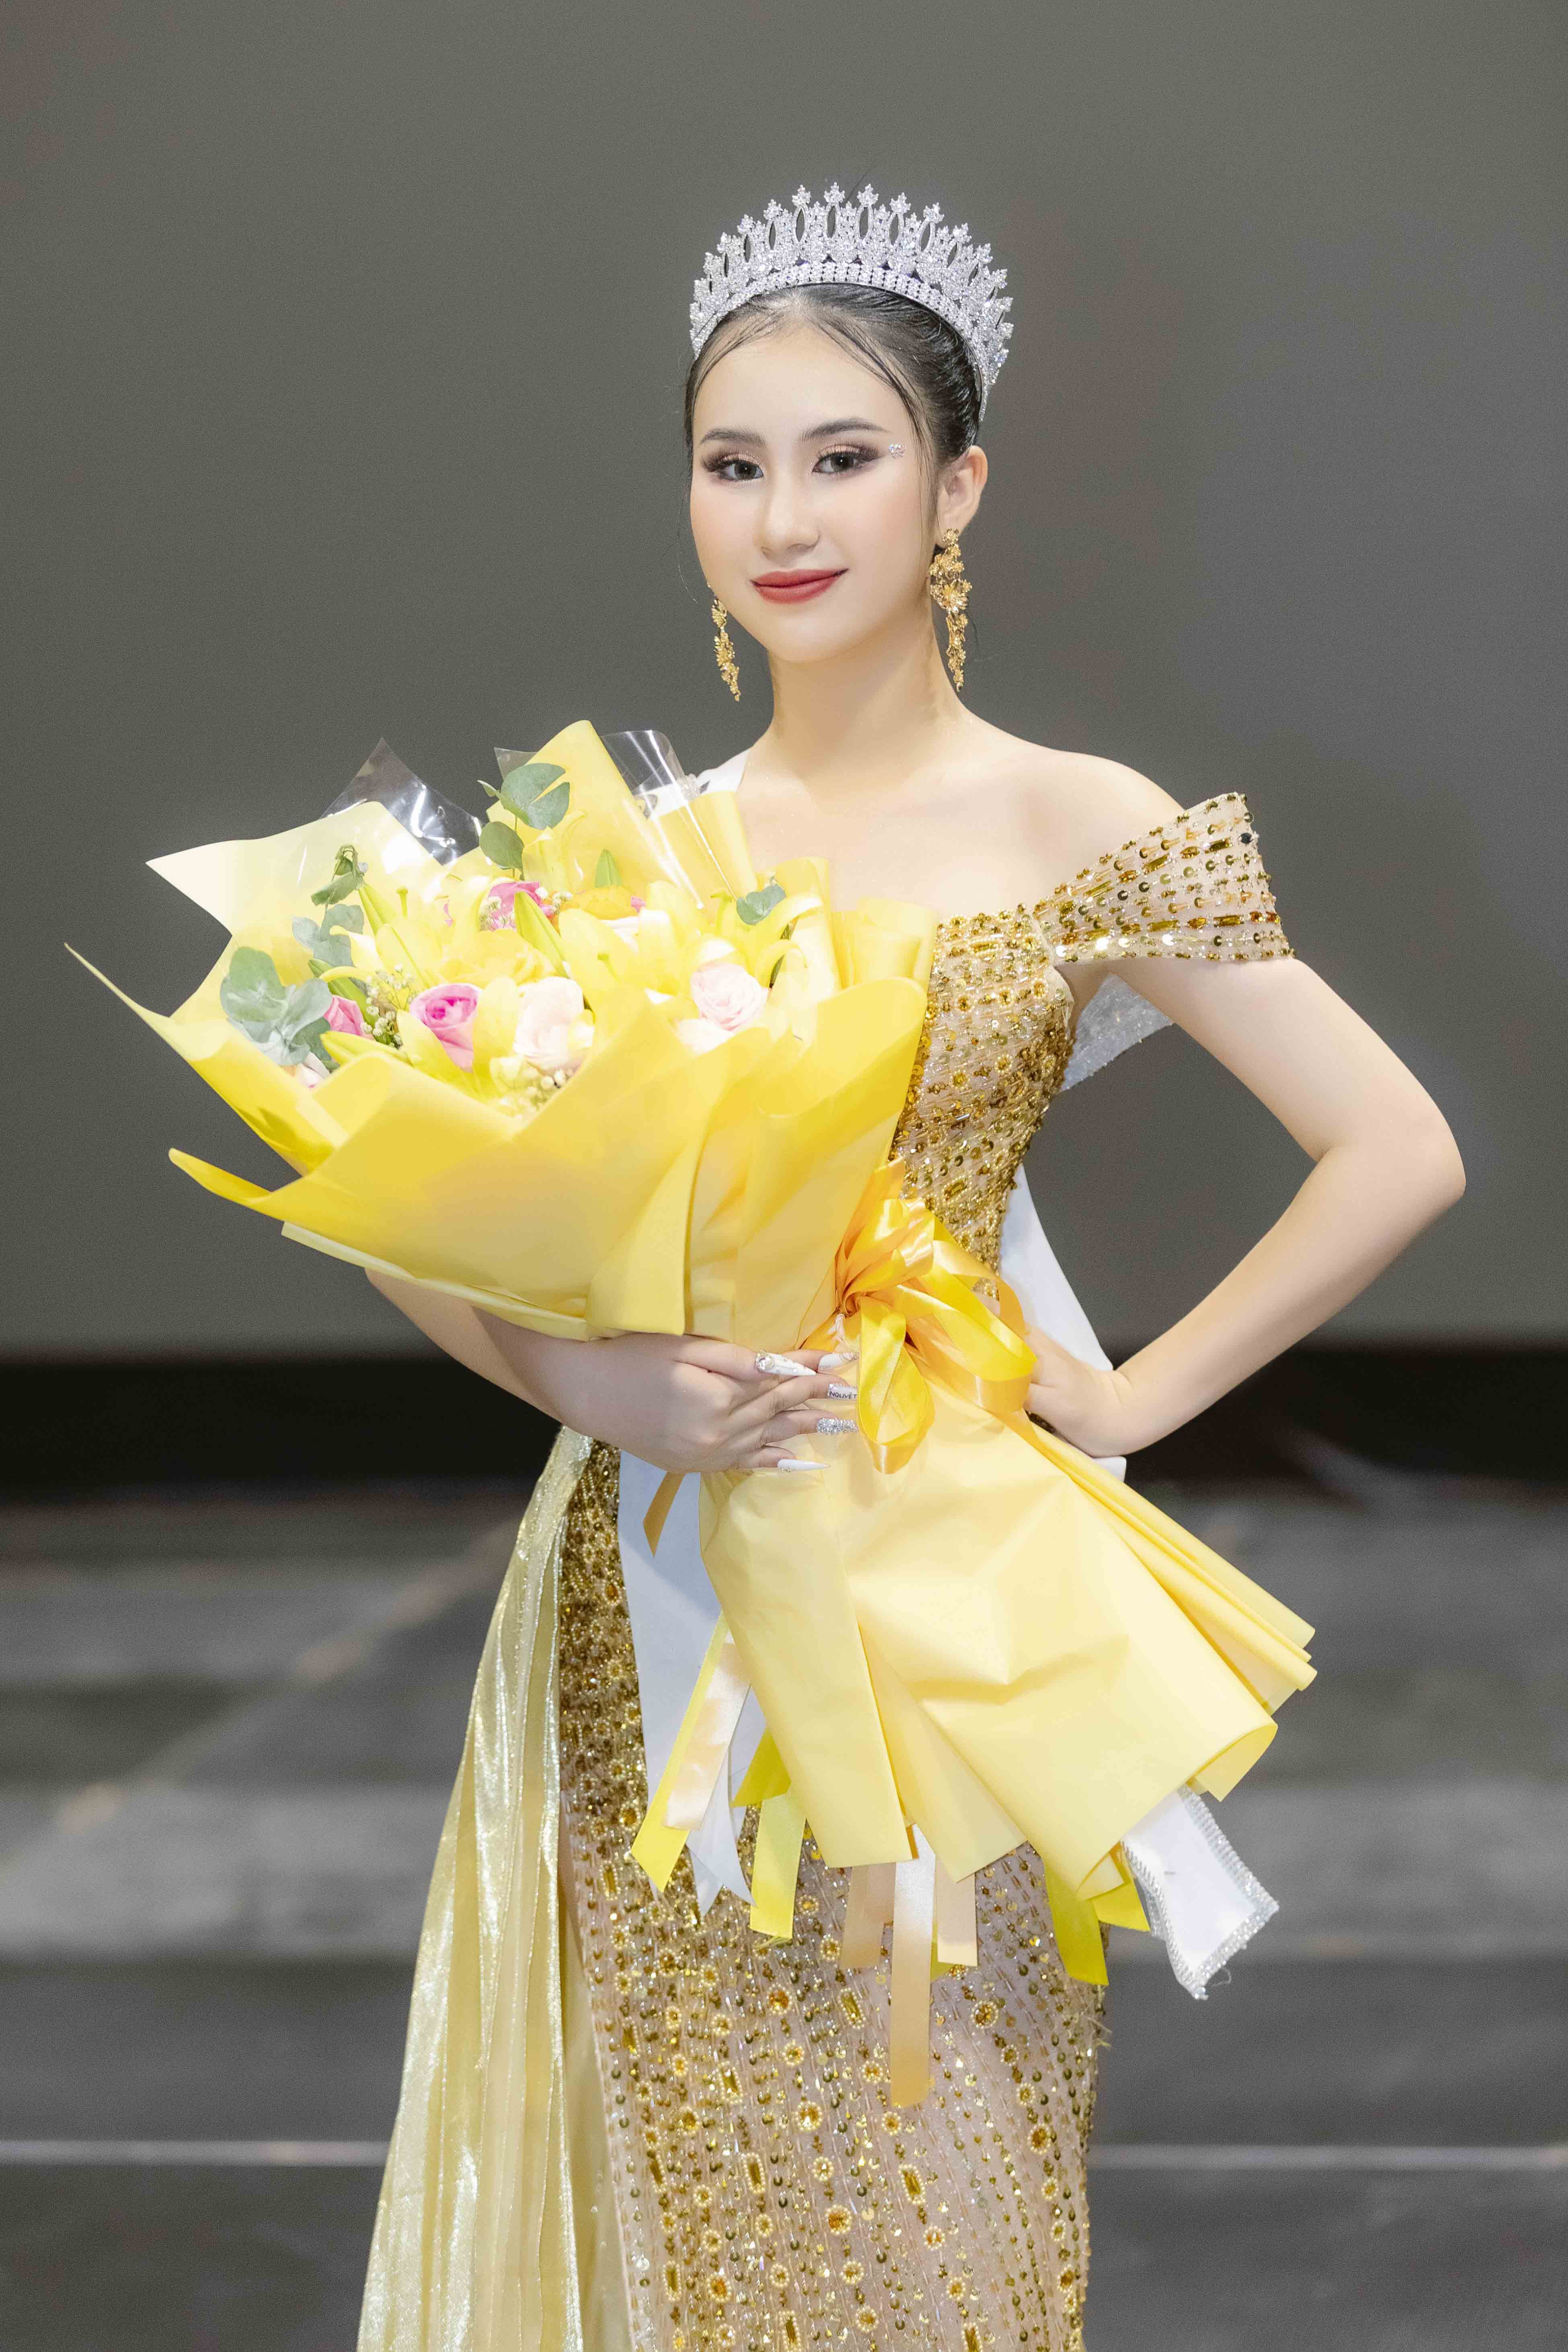 Hãnh diện và tự hào vì mình là người con Việt Nam, Nguyễn Trang Nguyệt Minh mang đến Miss Teen Grand International 2023 bộ trang phục dân tộc tiêu biểu tôn vinh nét độc đáo của văn hóa Việt Nam.